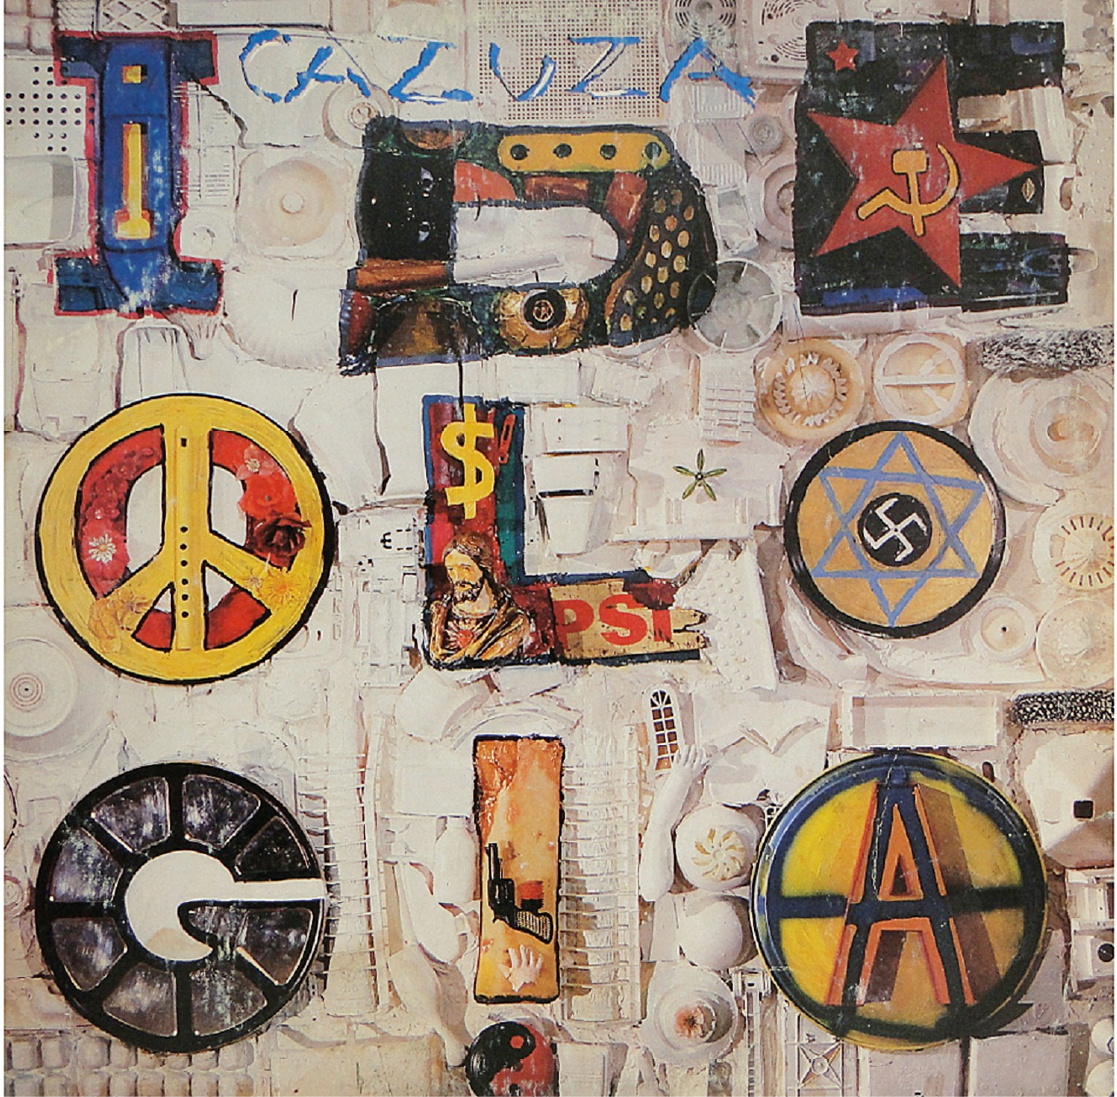 Fotografia. Capa de CD. Ilustração colorida com muitos símbolos nas letras que formam o título da obra: "Cazuza – Ideologia". Há símbolos de paz, anarquismo, socialismo etc.